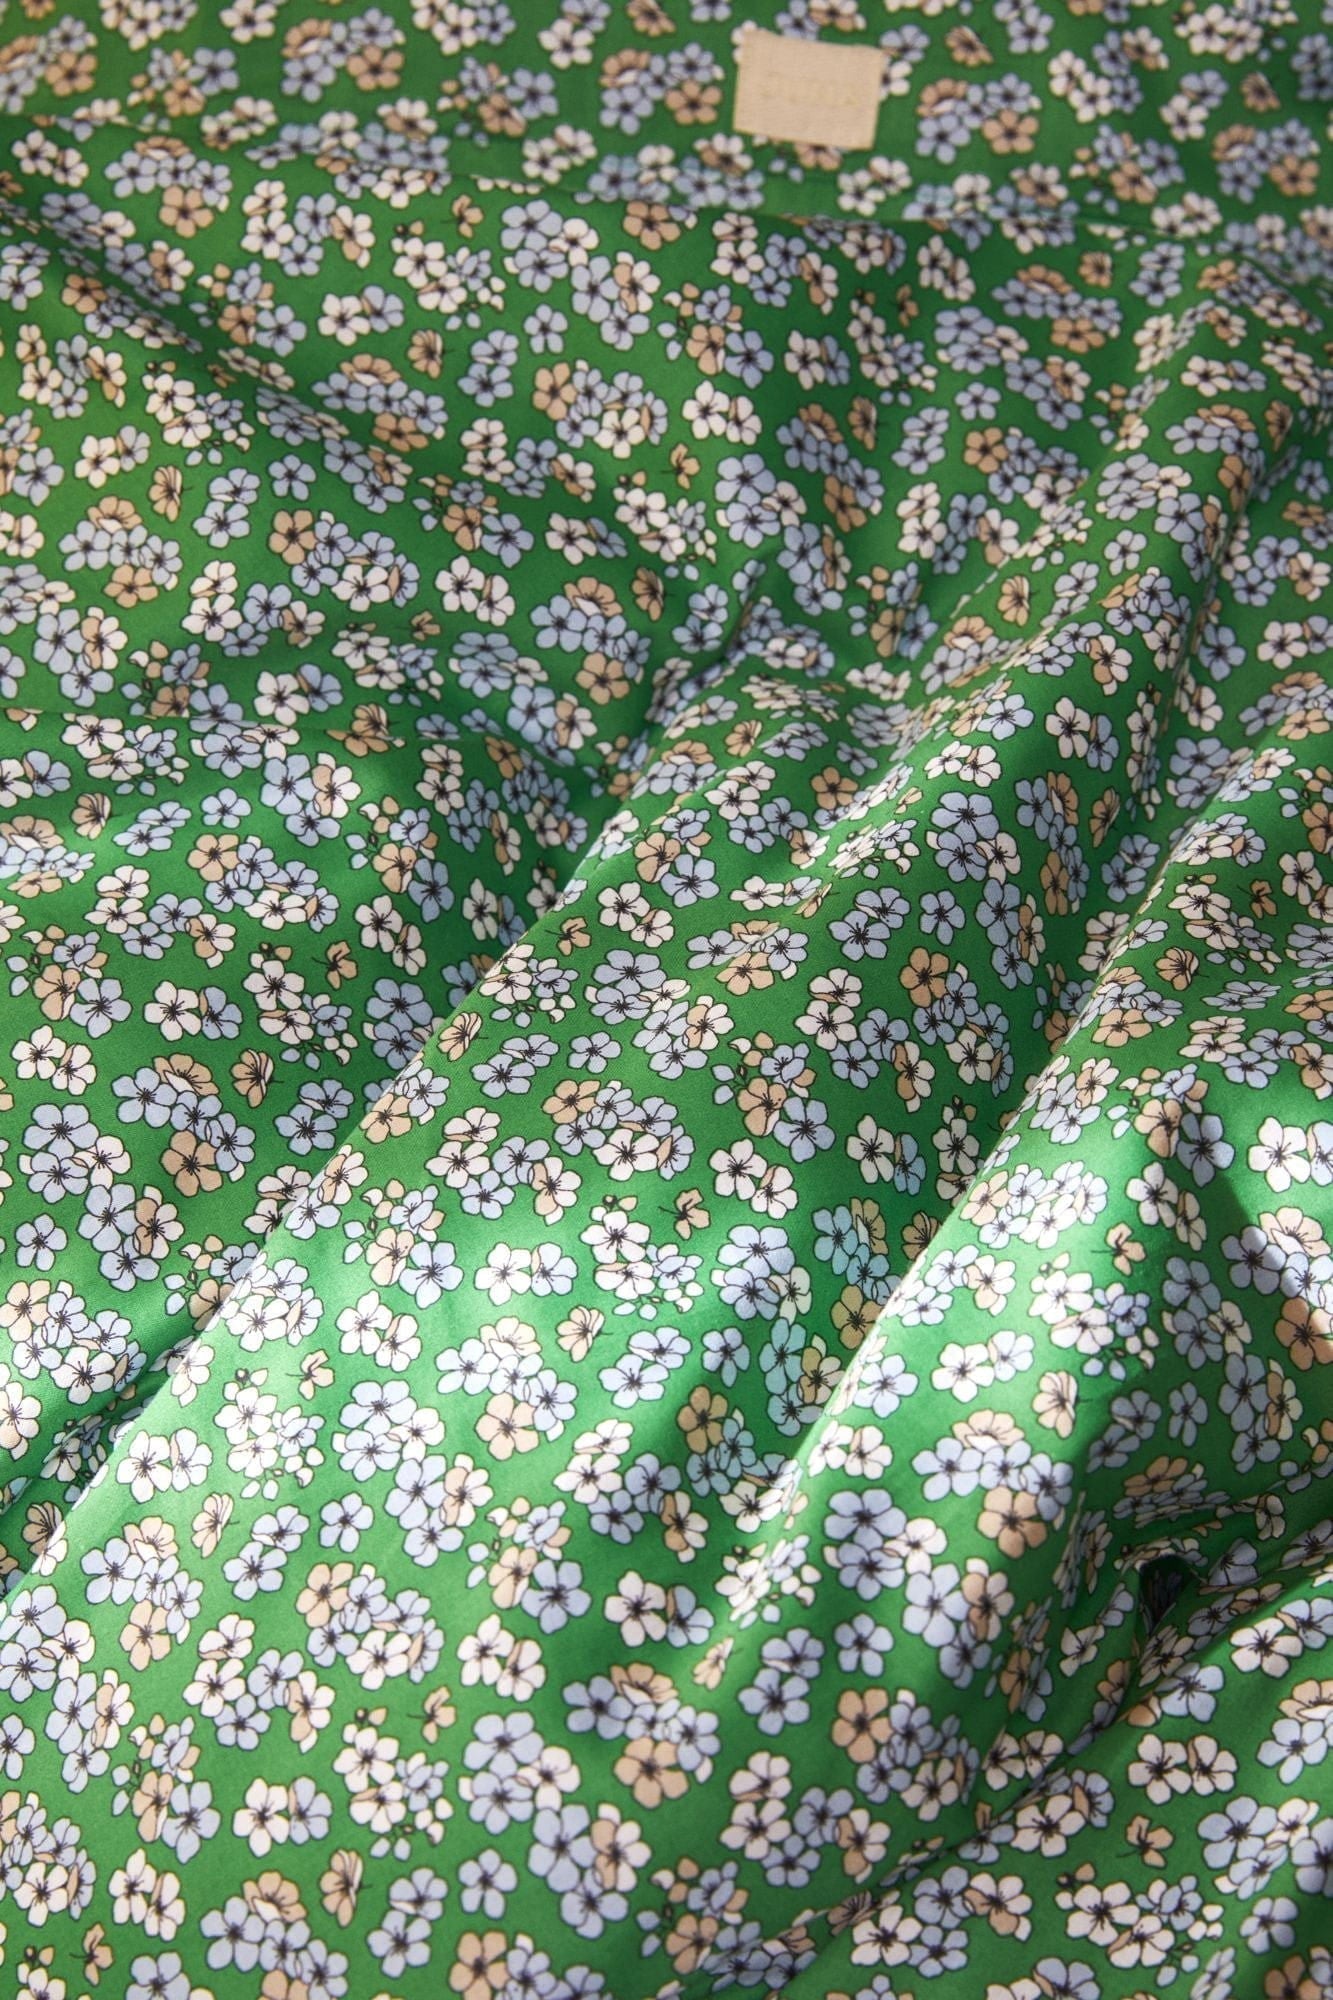 Juna Aangenaam bed linnen 200x220 cm, groen